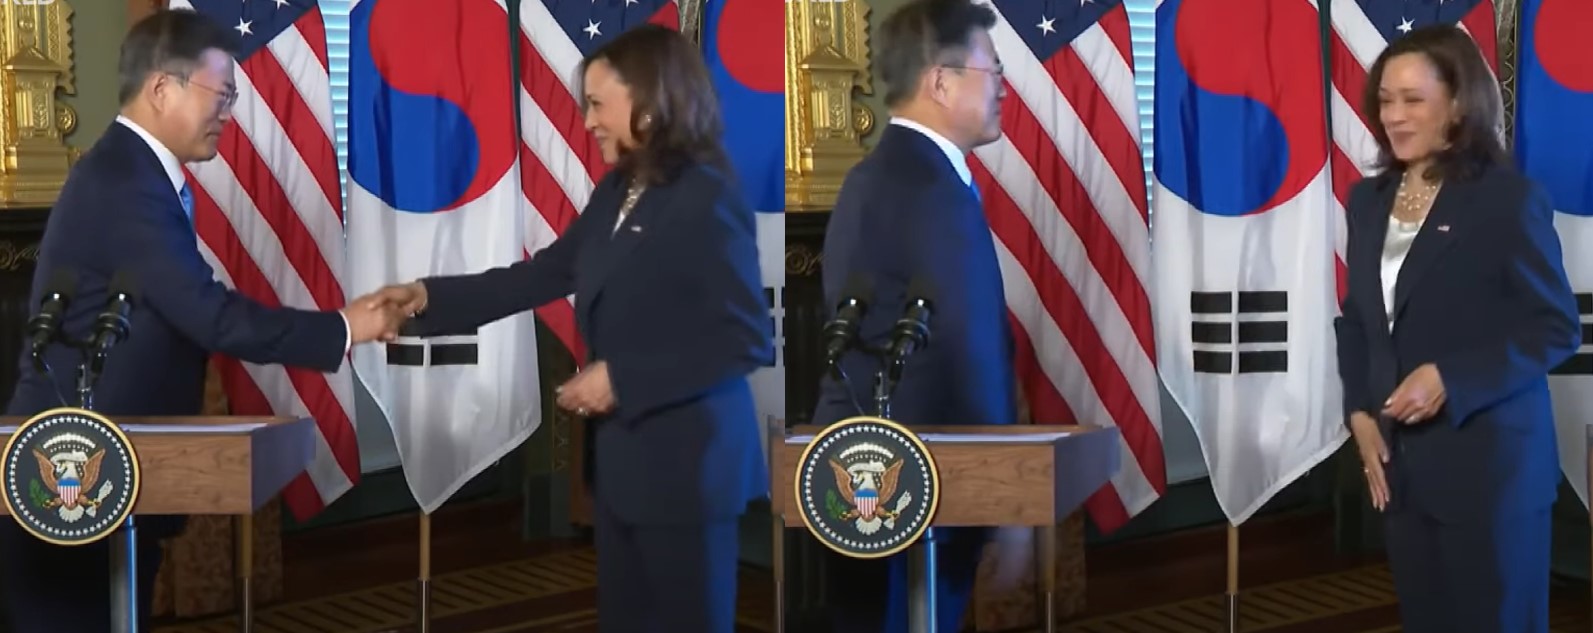 지난 21일(현지시간) 만난 문재인 대통령과 카멀라 해리스 미국 부통령. 유튜브 캡쳐